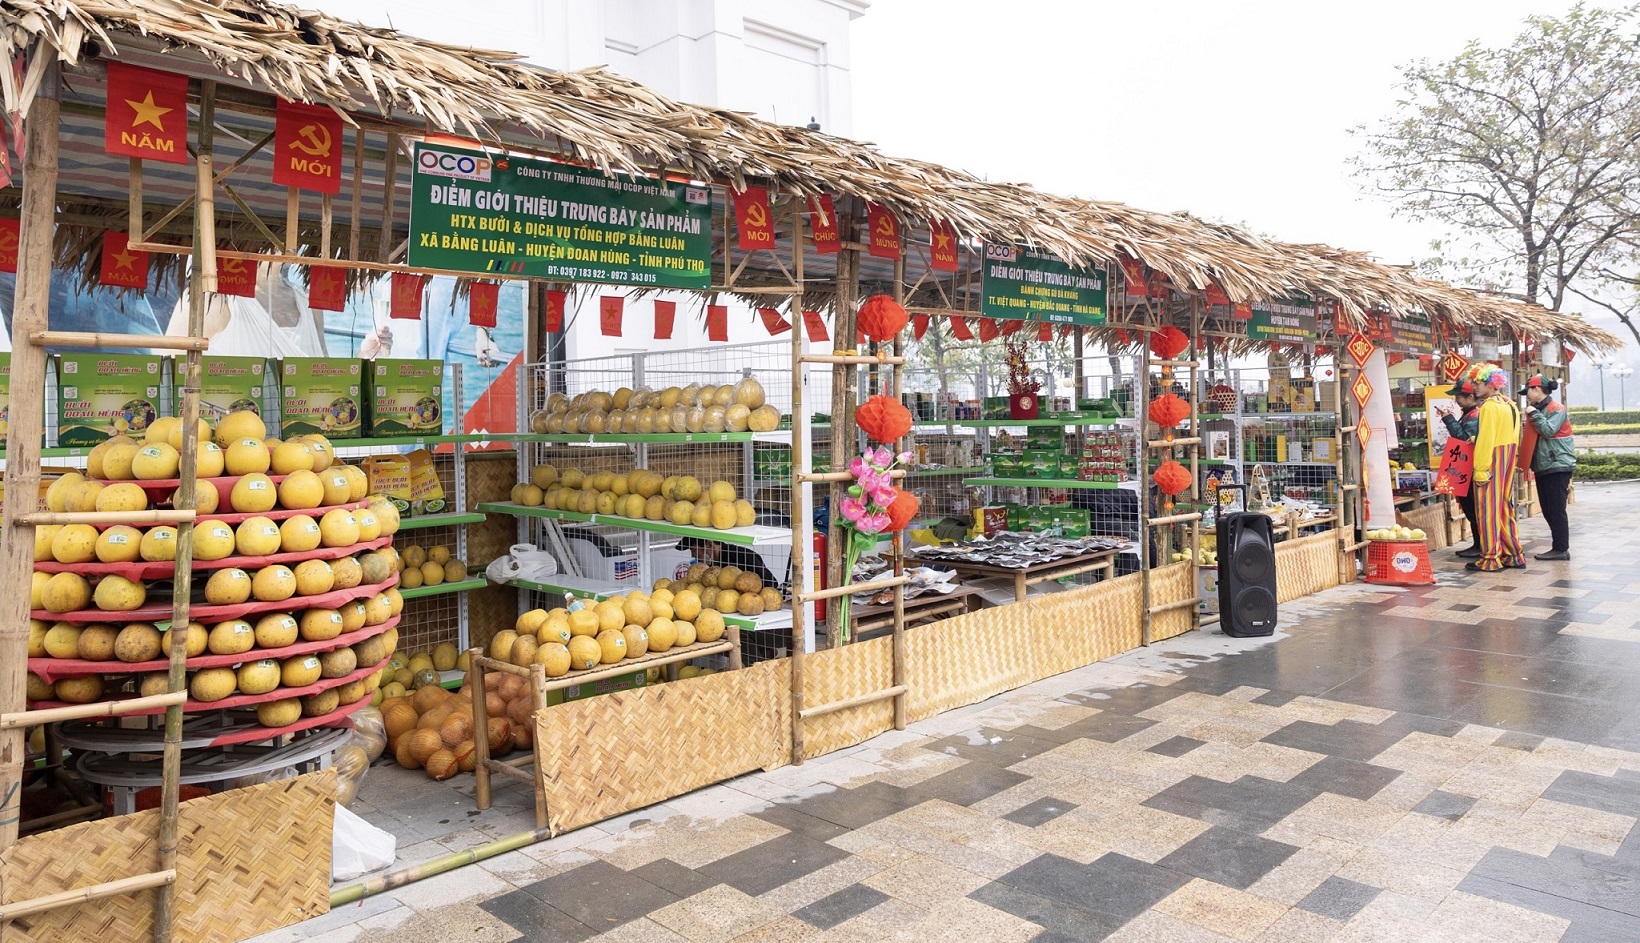 Phiên chợ Xuân Xanh tại Vincom quy tự hàng trăm mặt hàng đặc sản địa phương phong phú, hấp dẫn